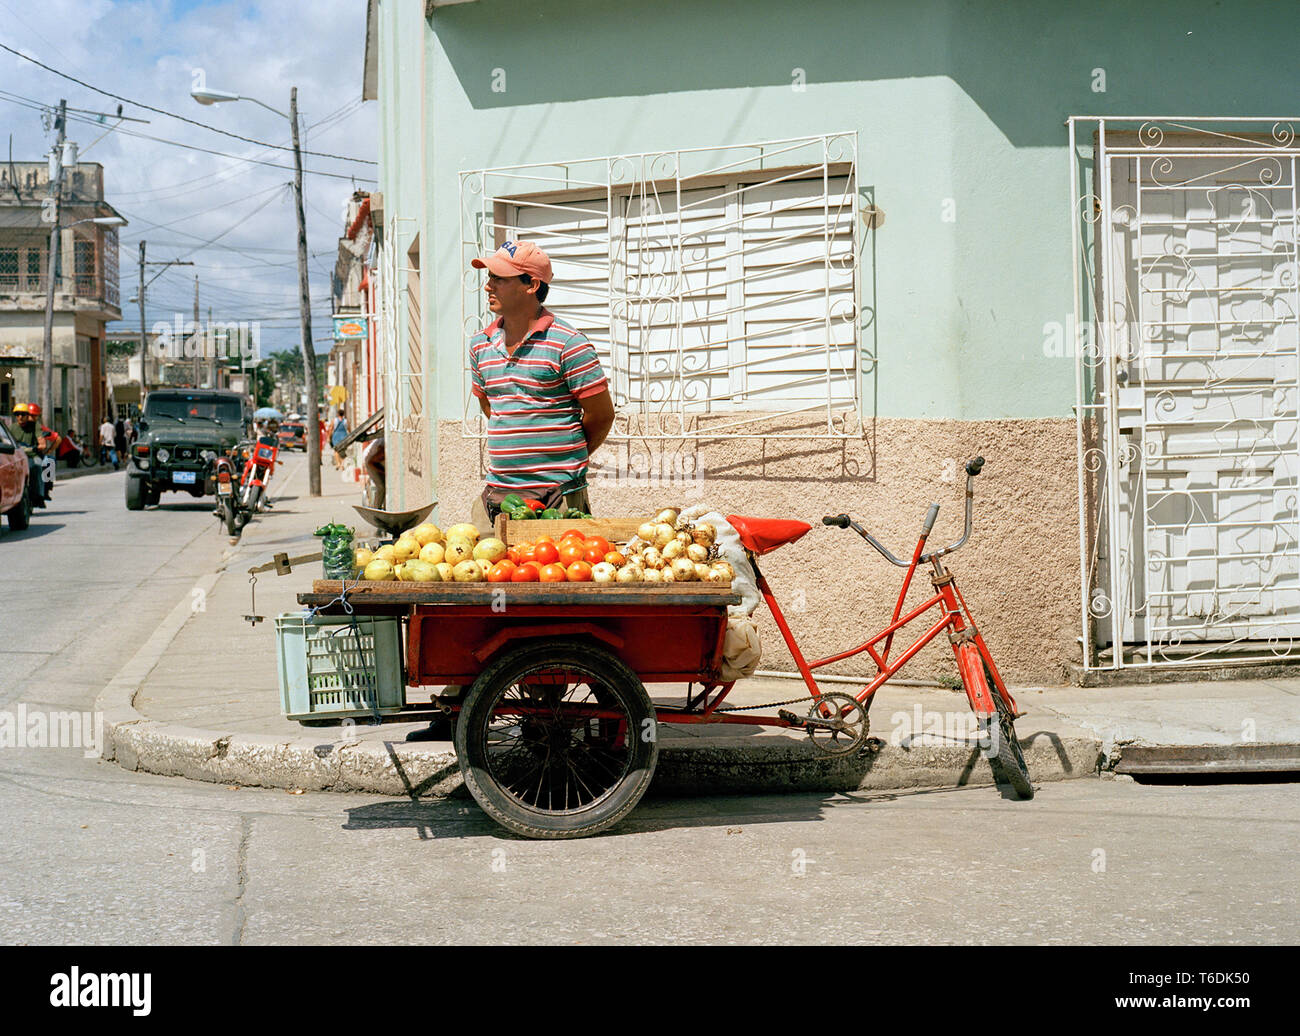 La frutta e la verdura venditore, Holguin, provincia di Holguin, Cuba Foto Stock